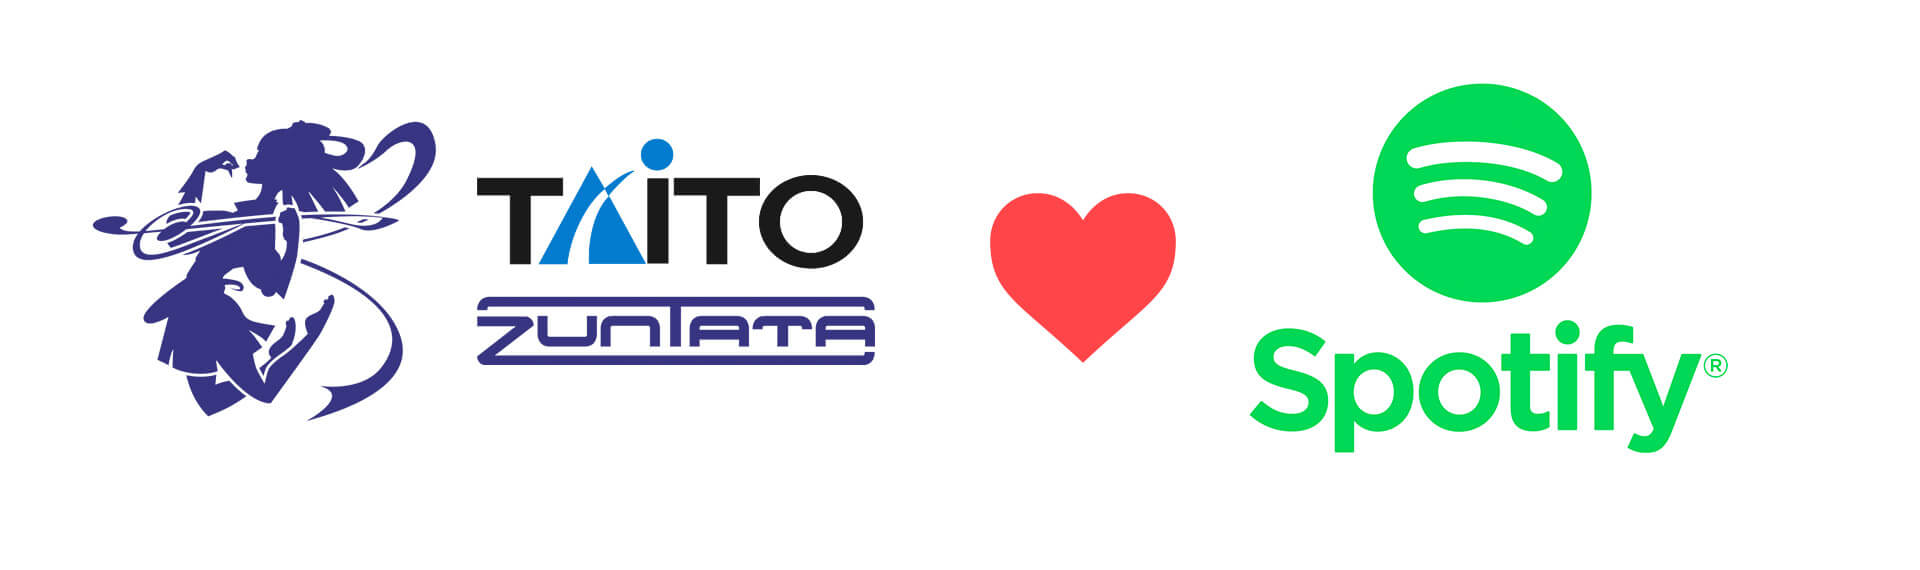 Taito, Zunata and Spotify's logos